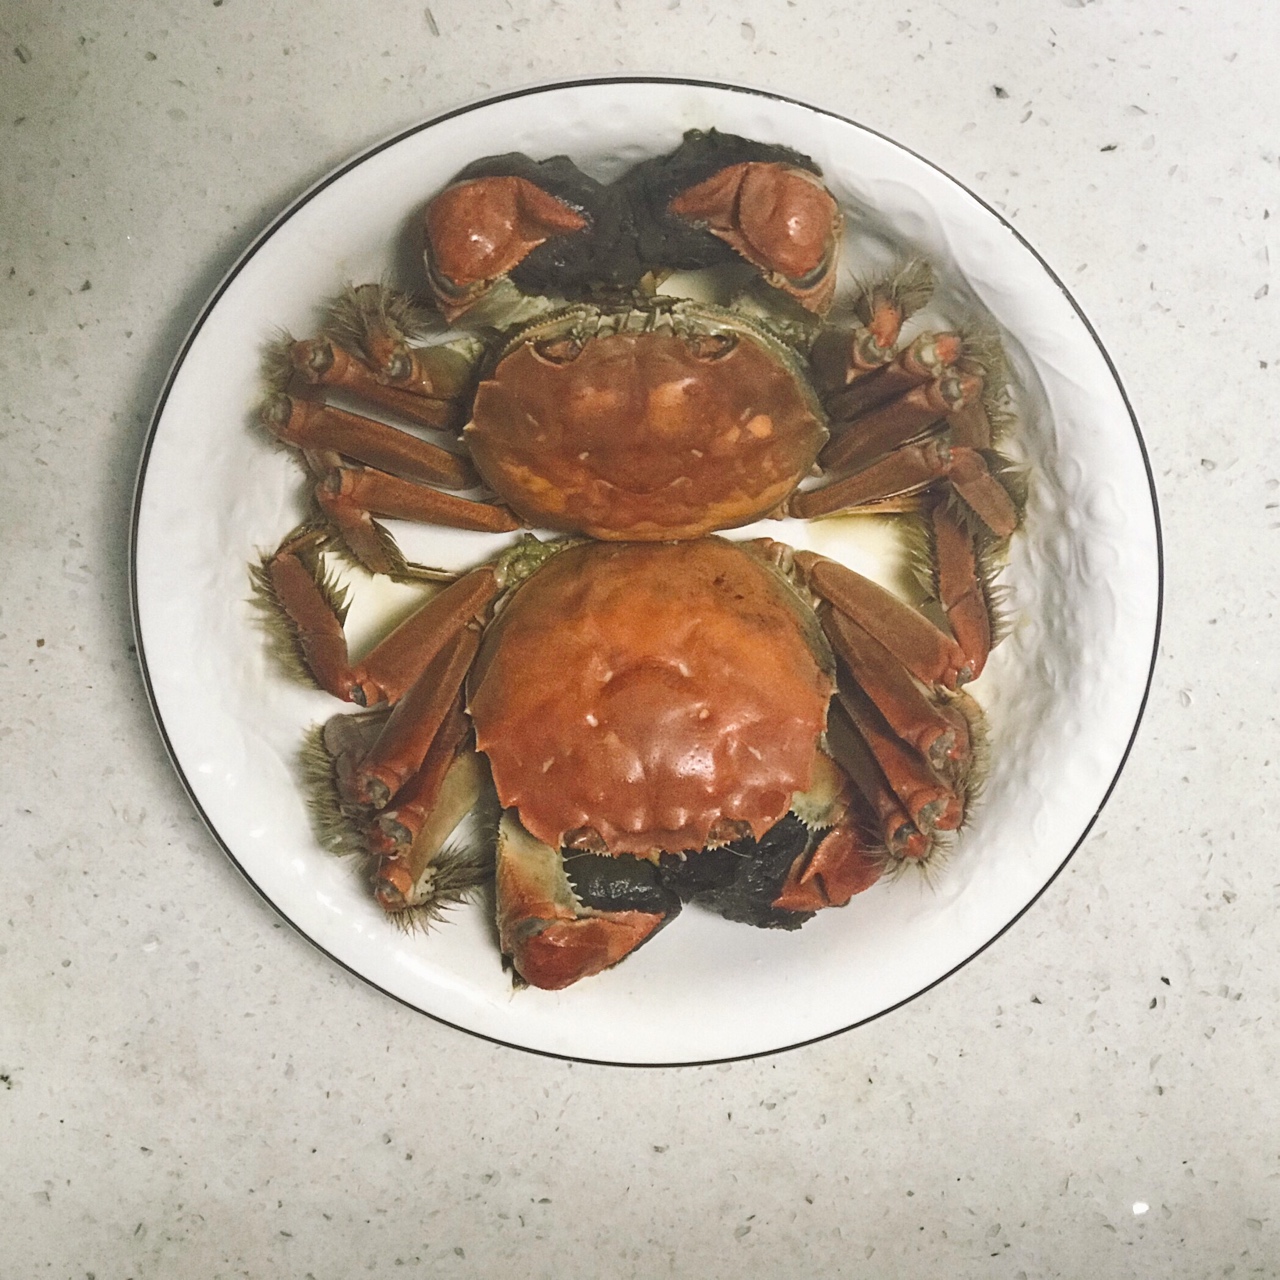 煮螃蟹